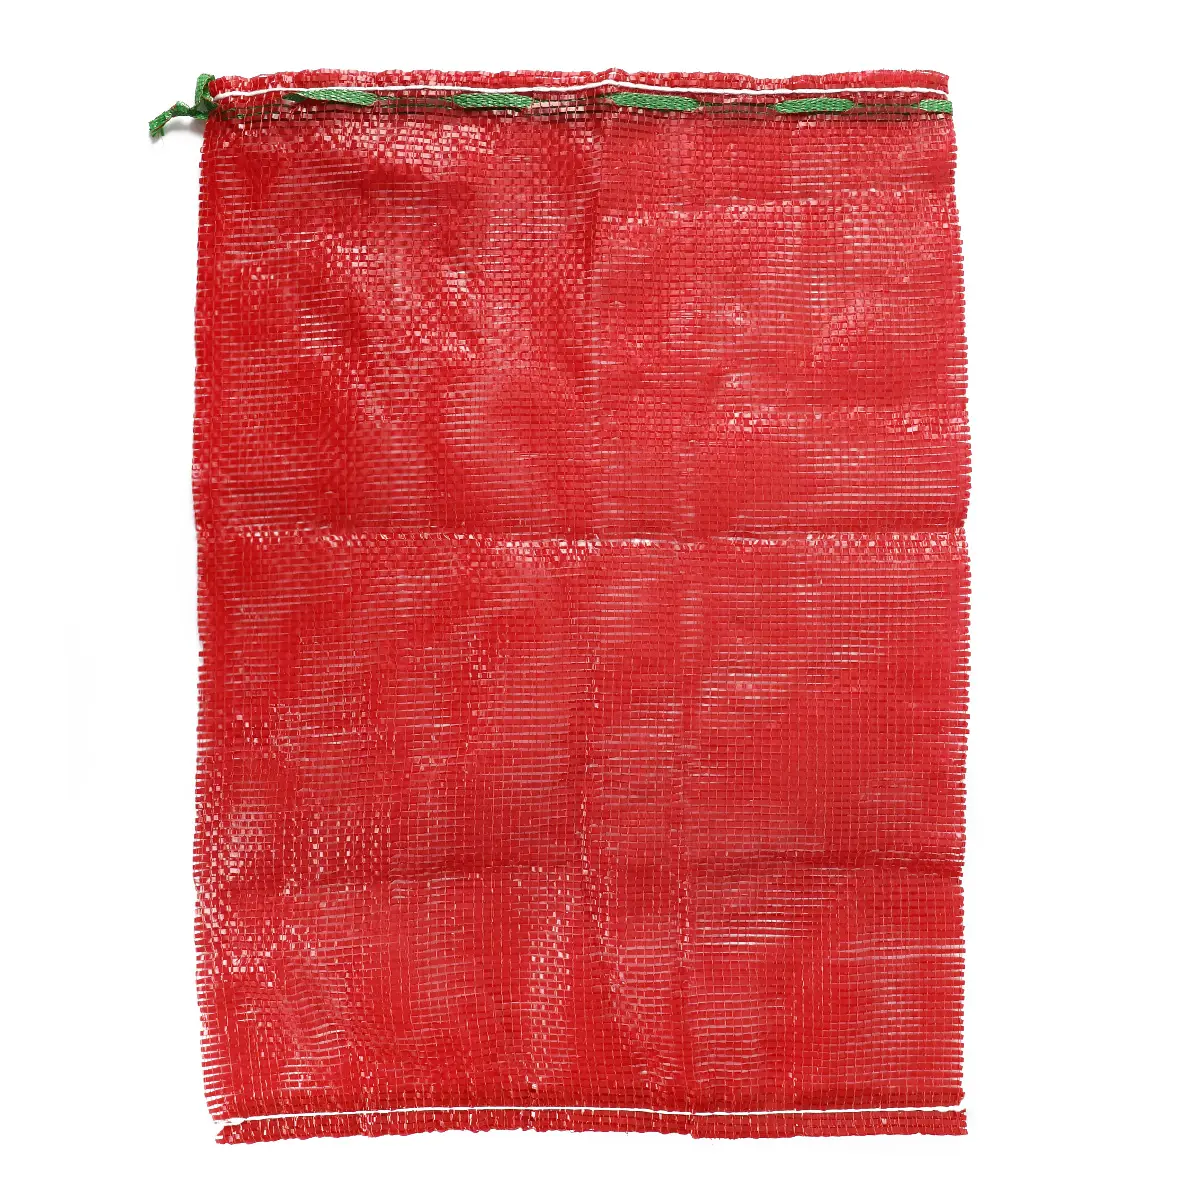 Moluscos malha rede saco marisco malha saco para embalagem com tamanho personalizado Personalizado colorido cordão tubular malha saco vermelho embalagem frutas